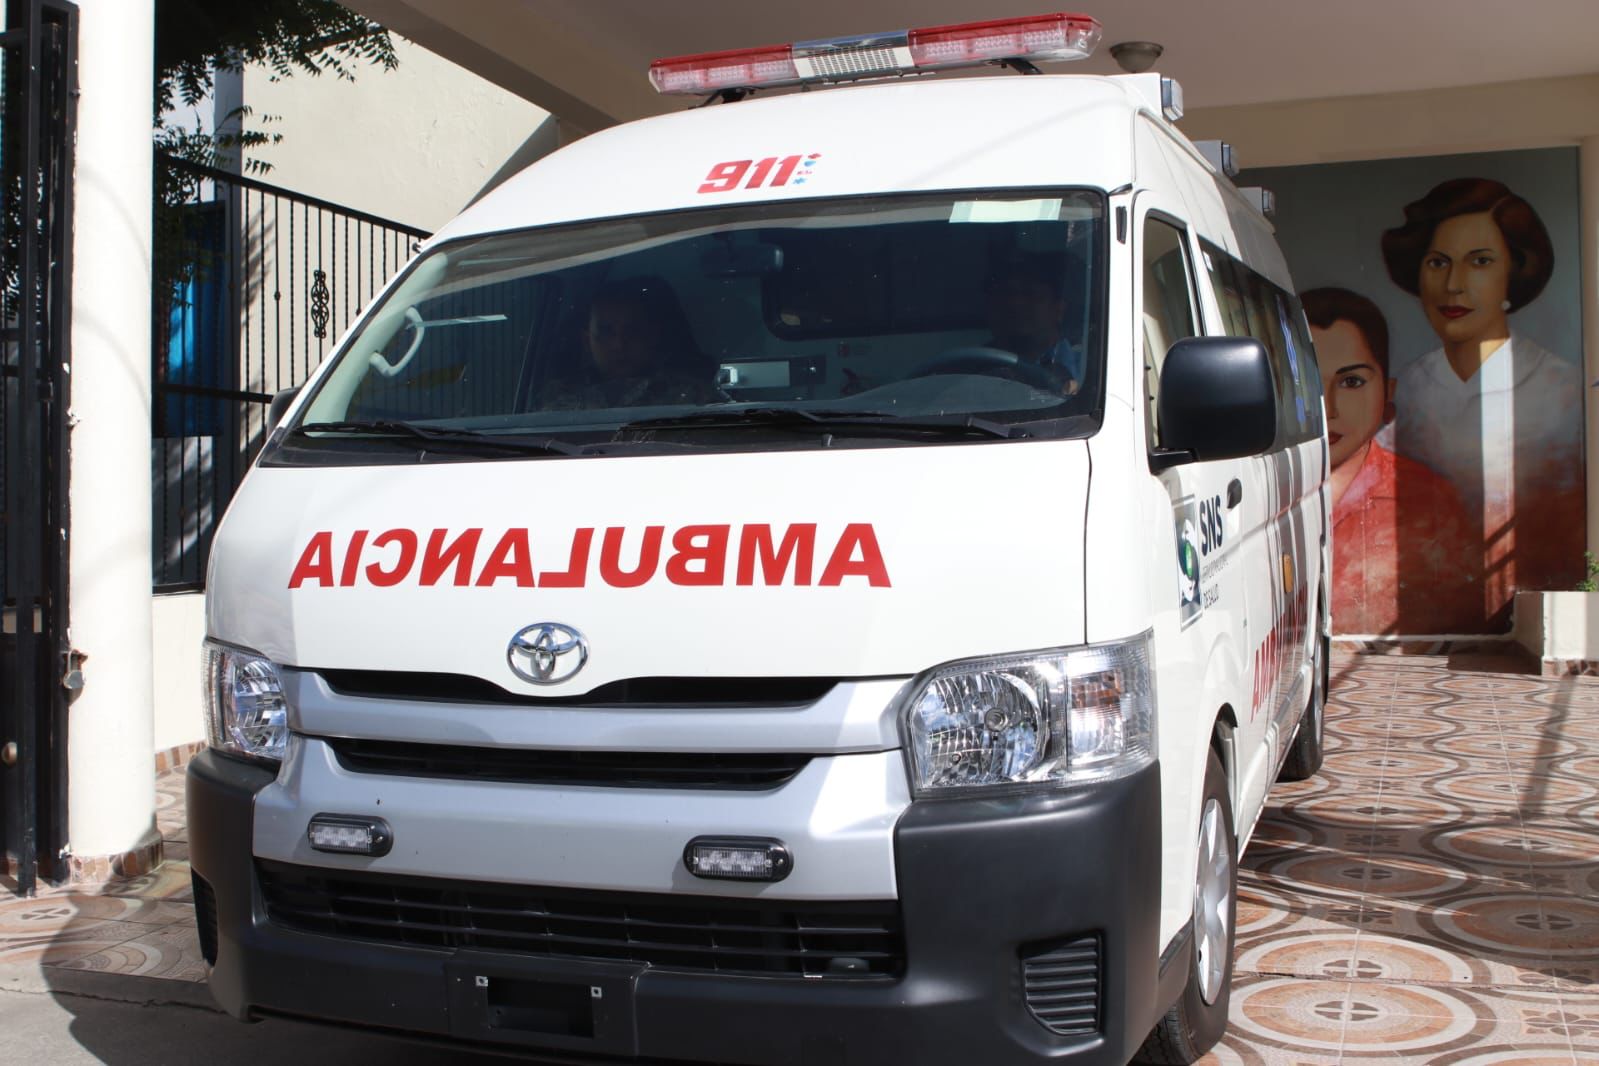 REPÚBLICA DOMINICANA: Gobierno entrega moderna ambulancia en Salcedo para apoyar al SNS y Sistema 9-1-1